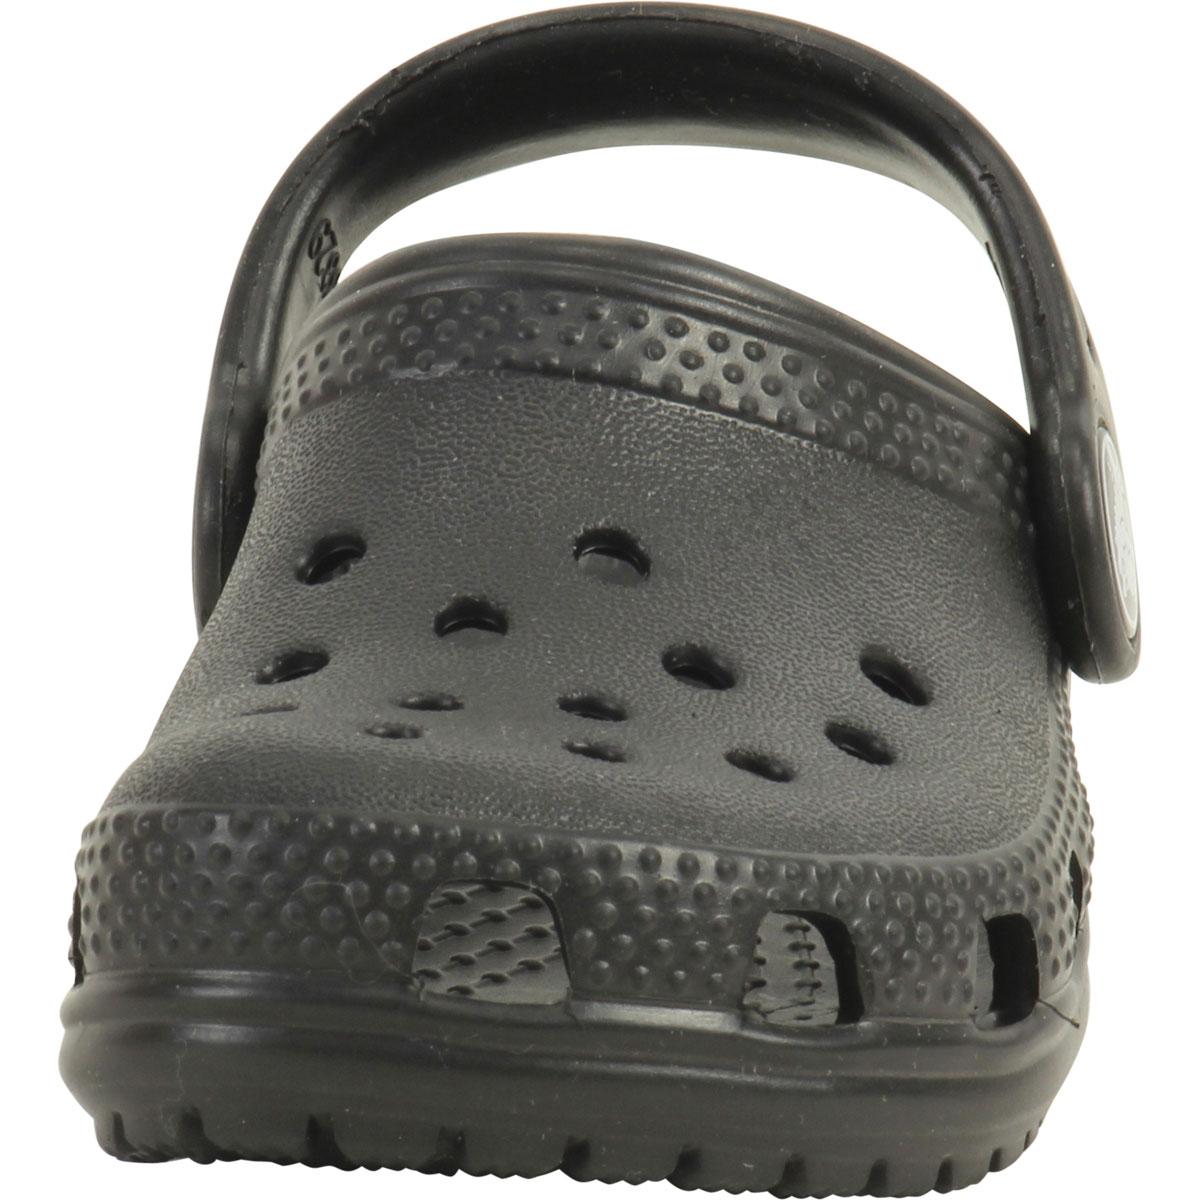 Crocs Toddler/Little Boy's Original Classic Clogs Sandals Shoes ...